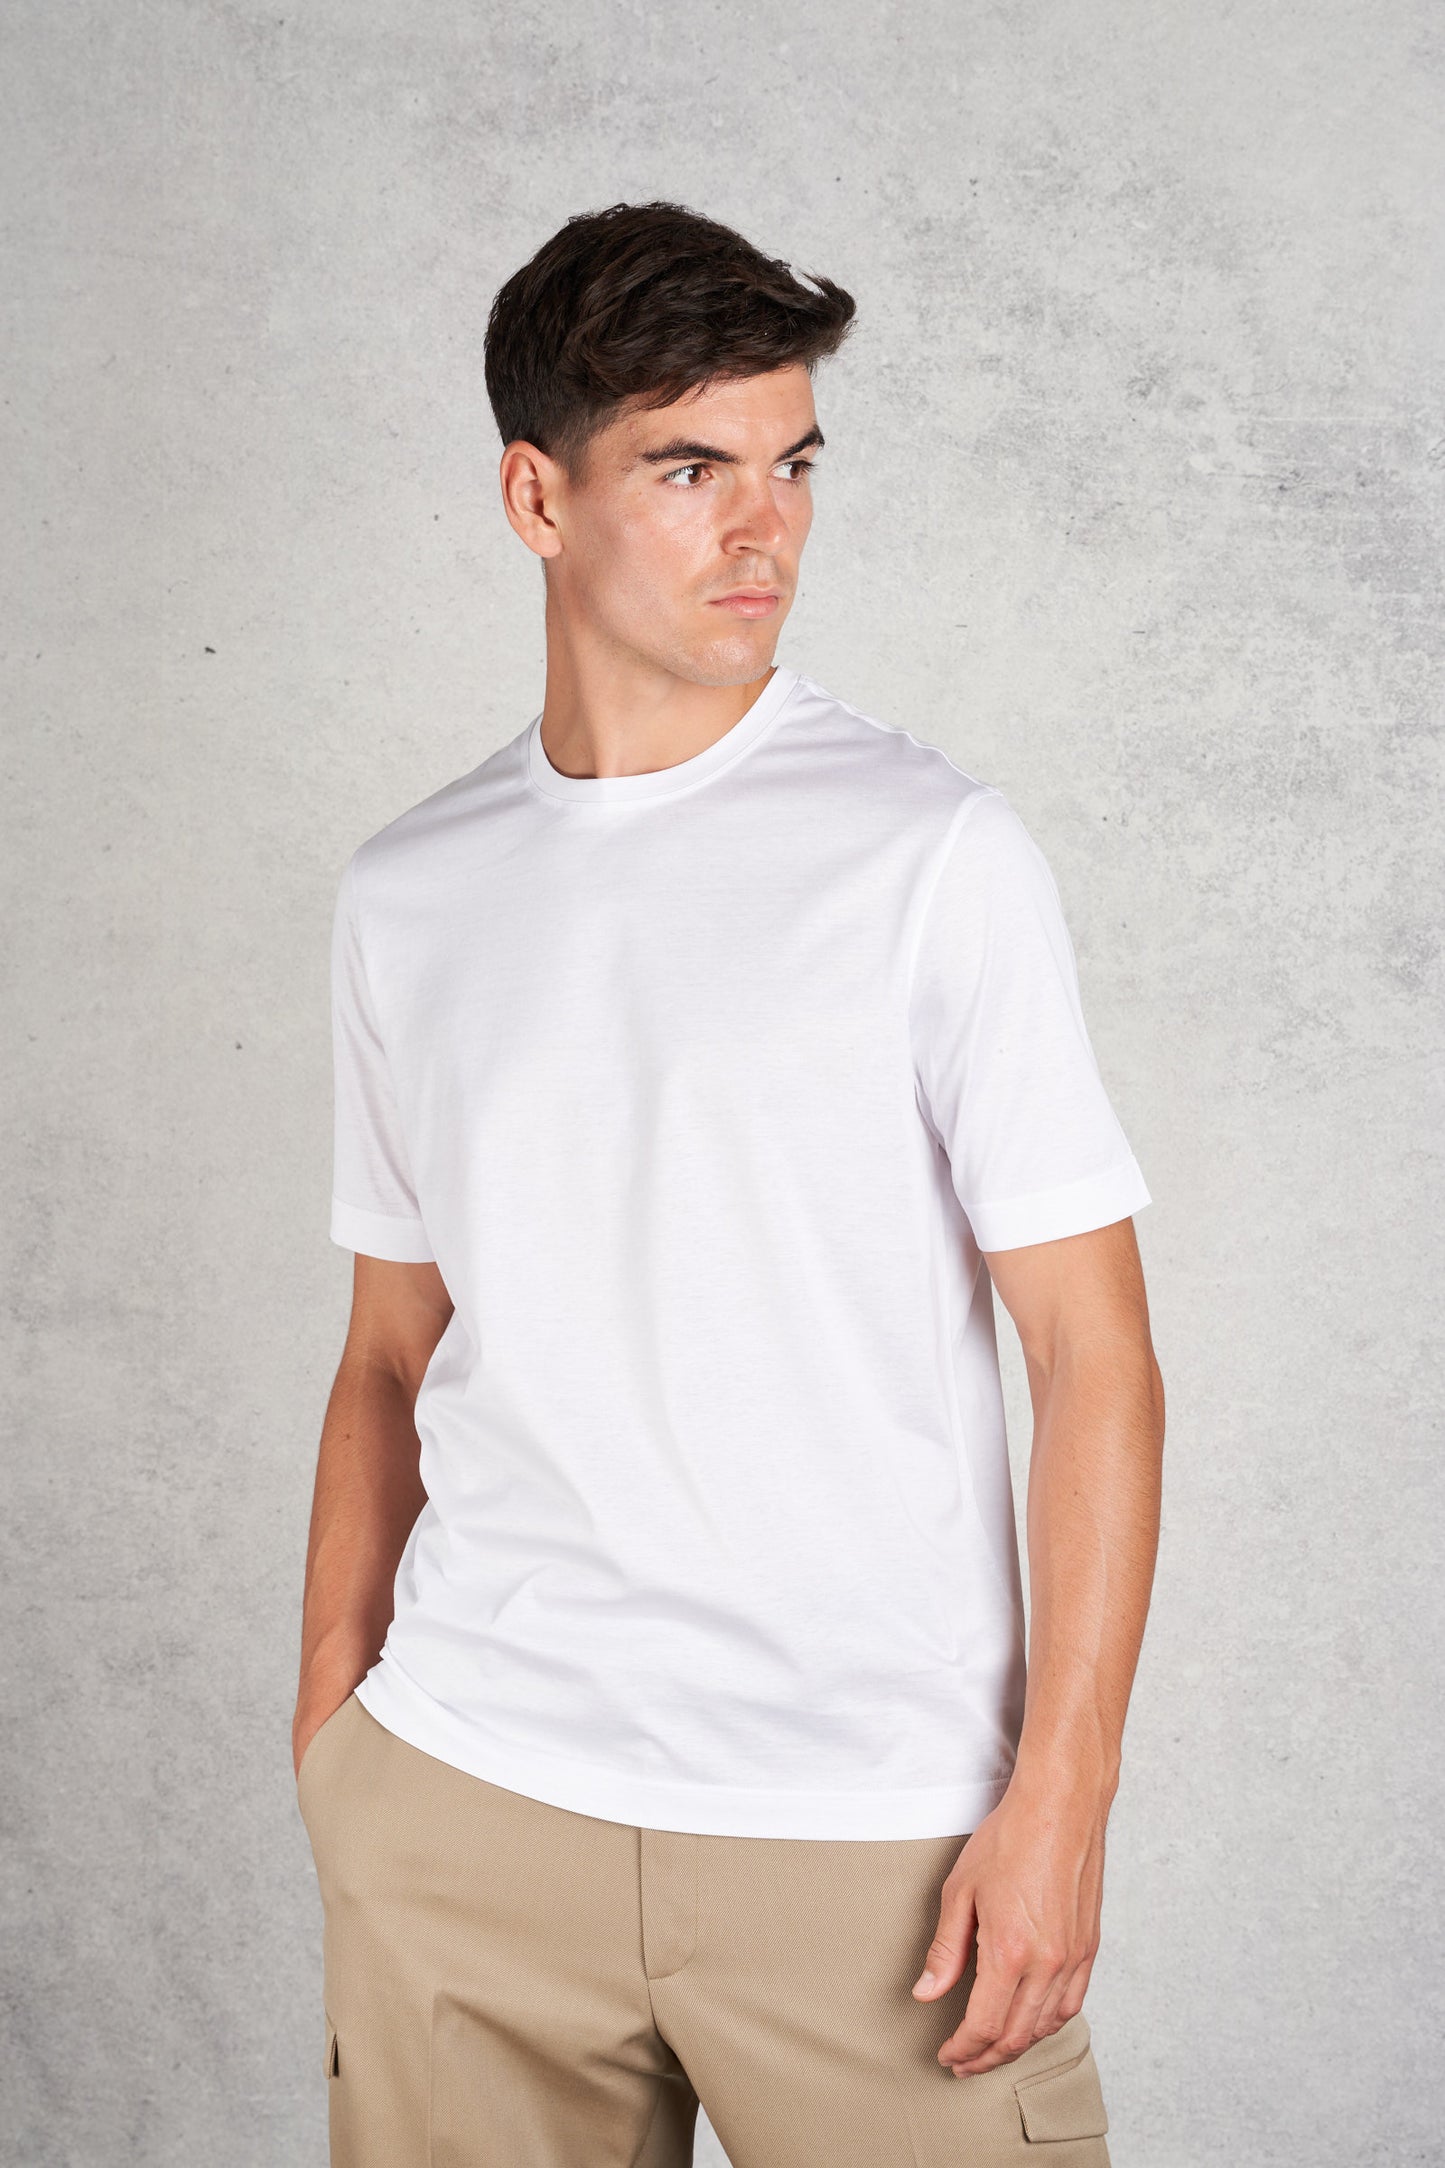  Filippo De Laurentiis Men's White Short Sleeve T-shirt Bianco Uomo - 2